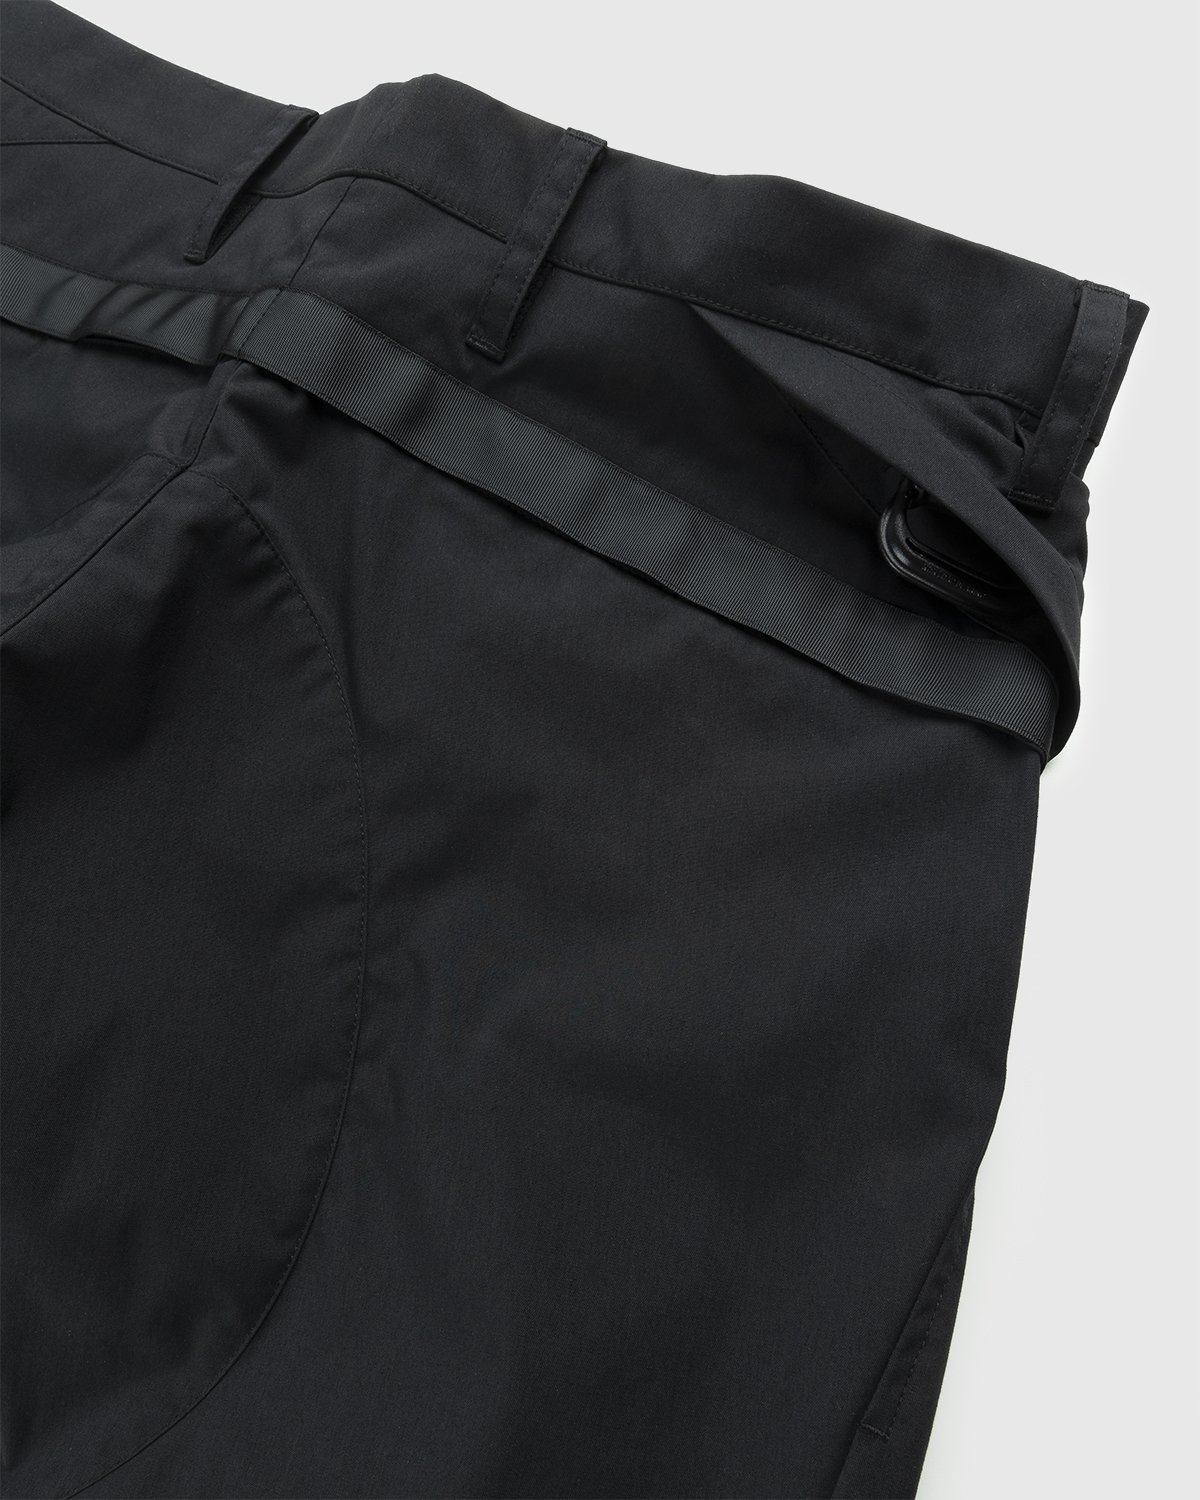 ACRONYM - P10-E Pant Black - Clothing - Black - Image 5